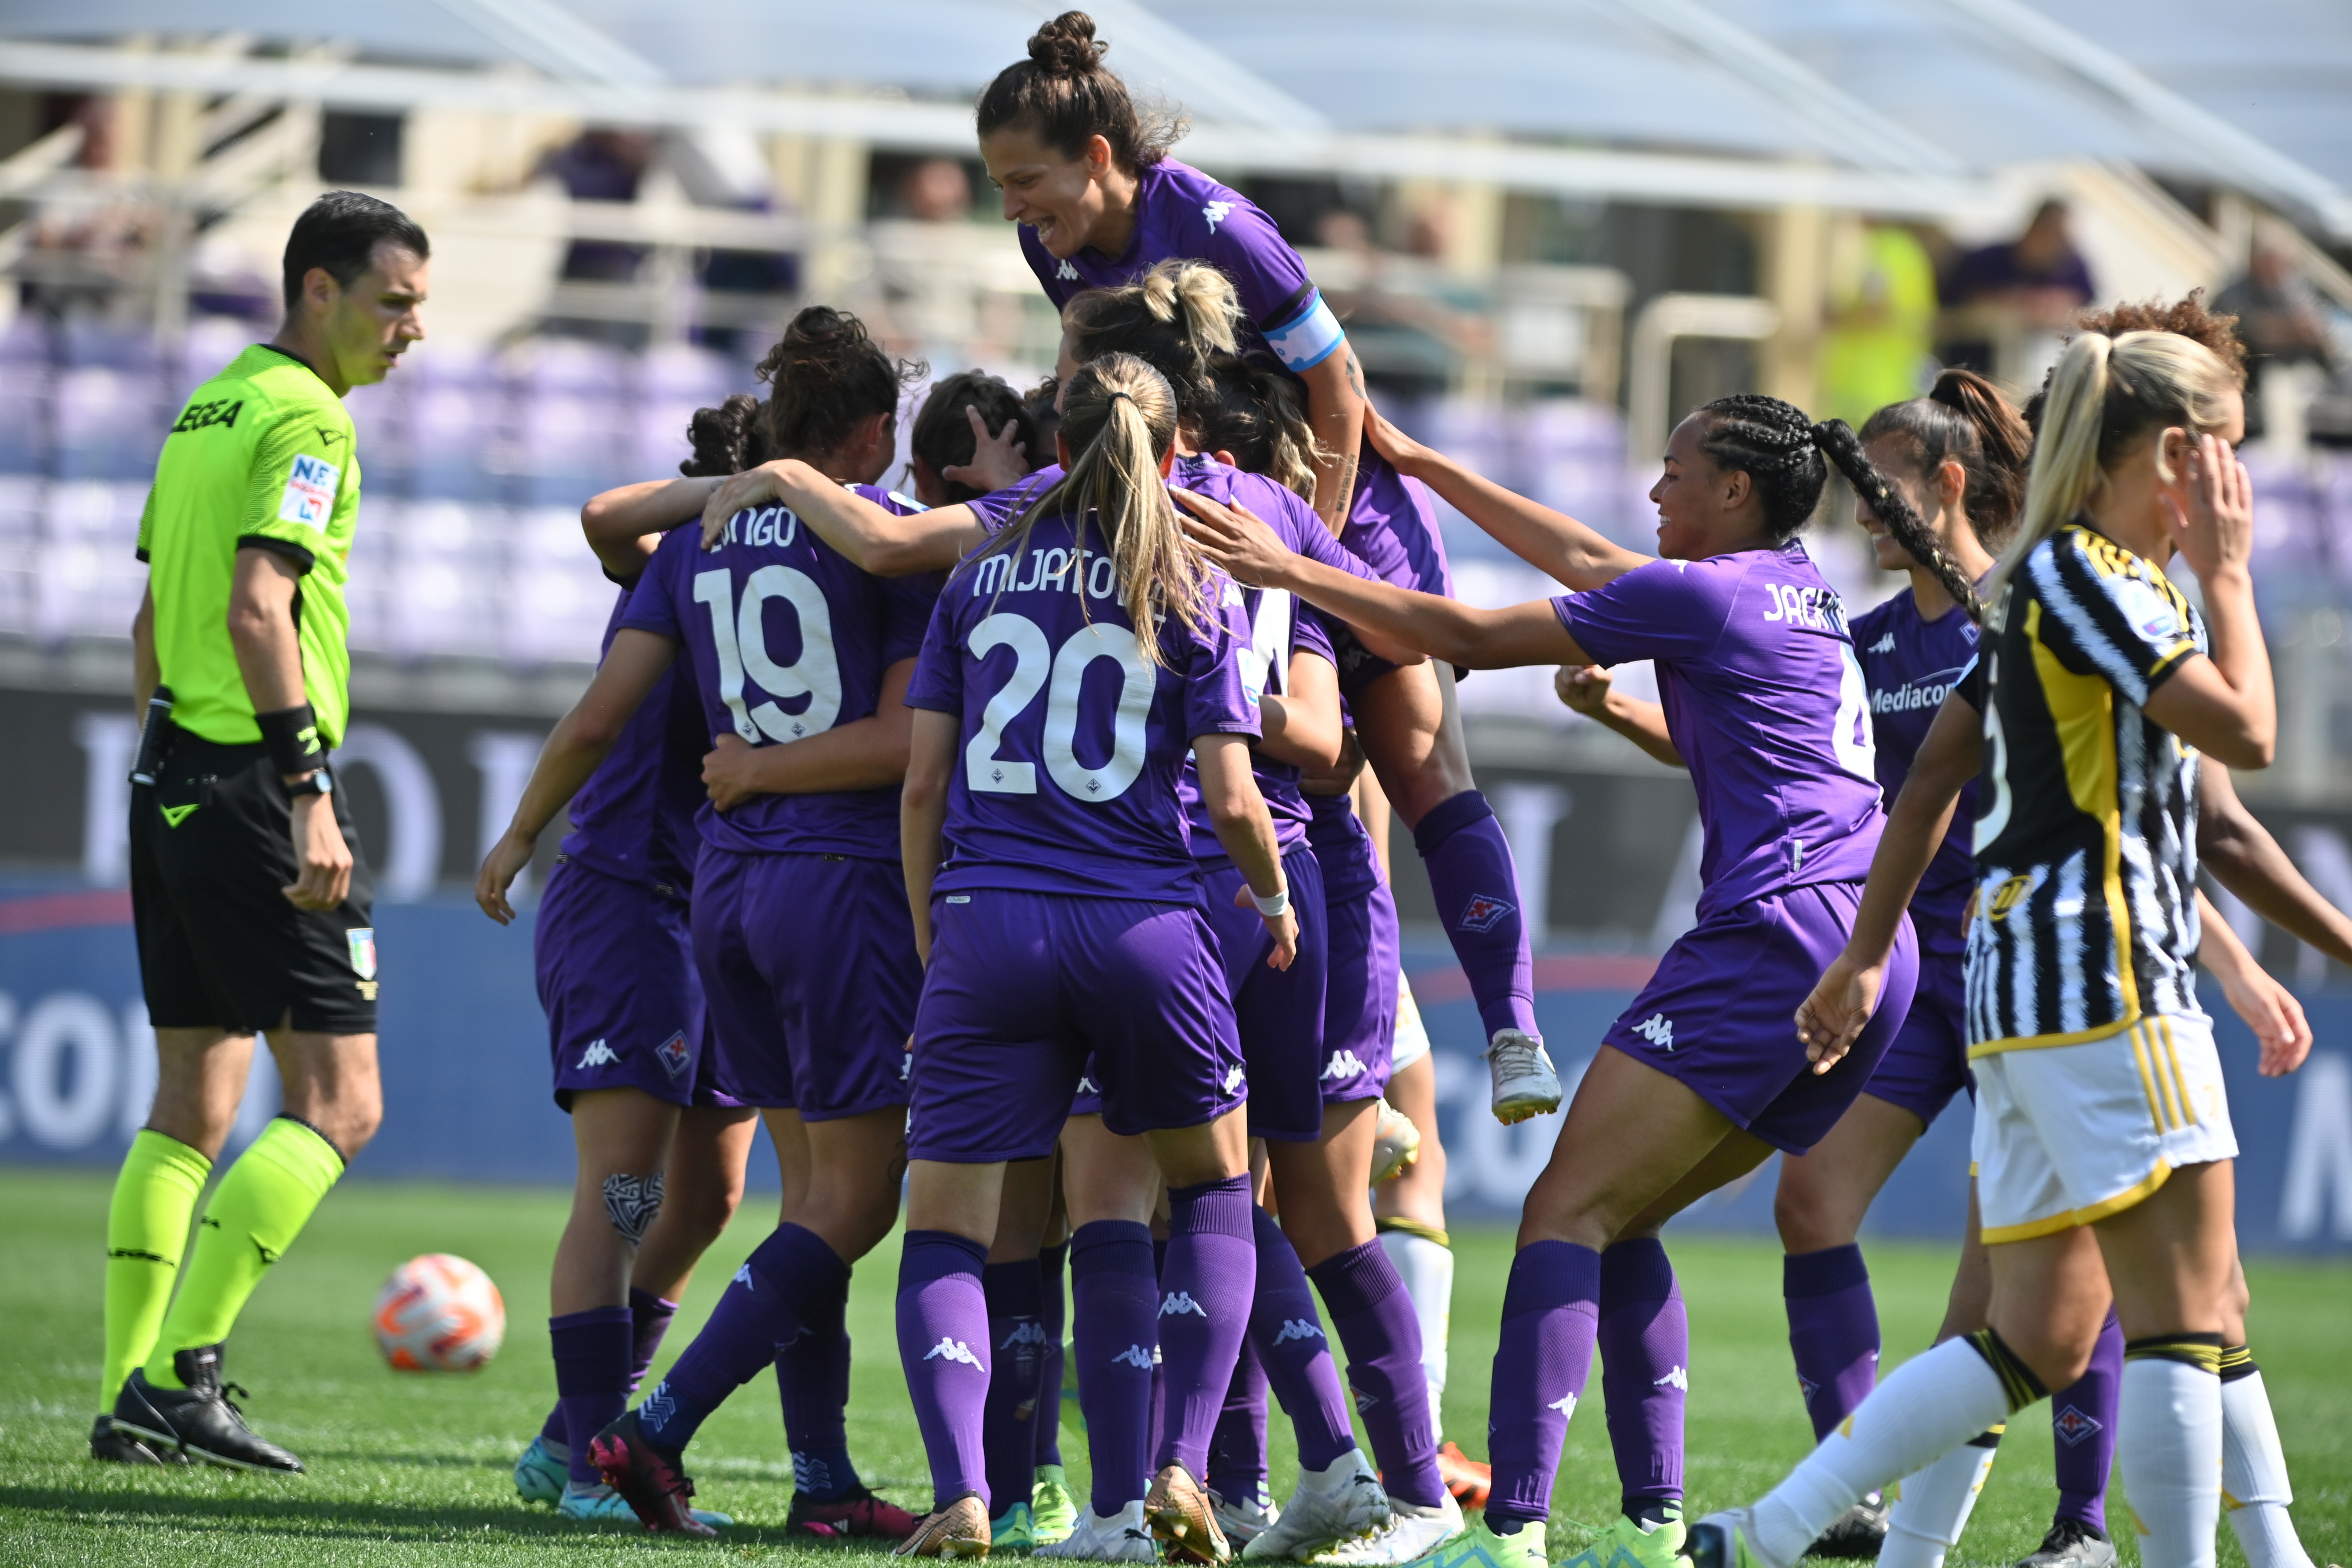 Juventus vs ACF Fiorentina Femminile 4-0, MATCH HIGHLIGHTS